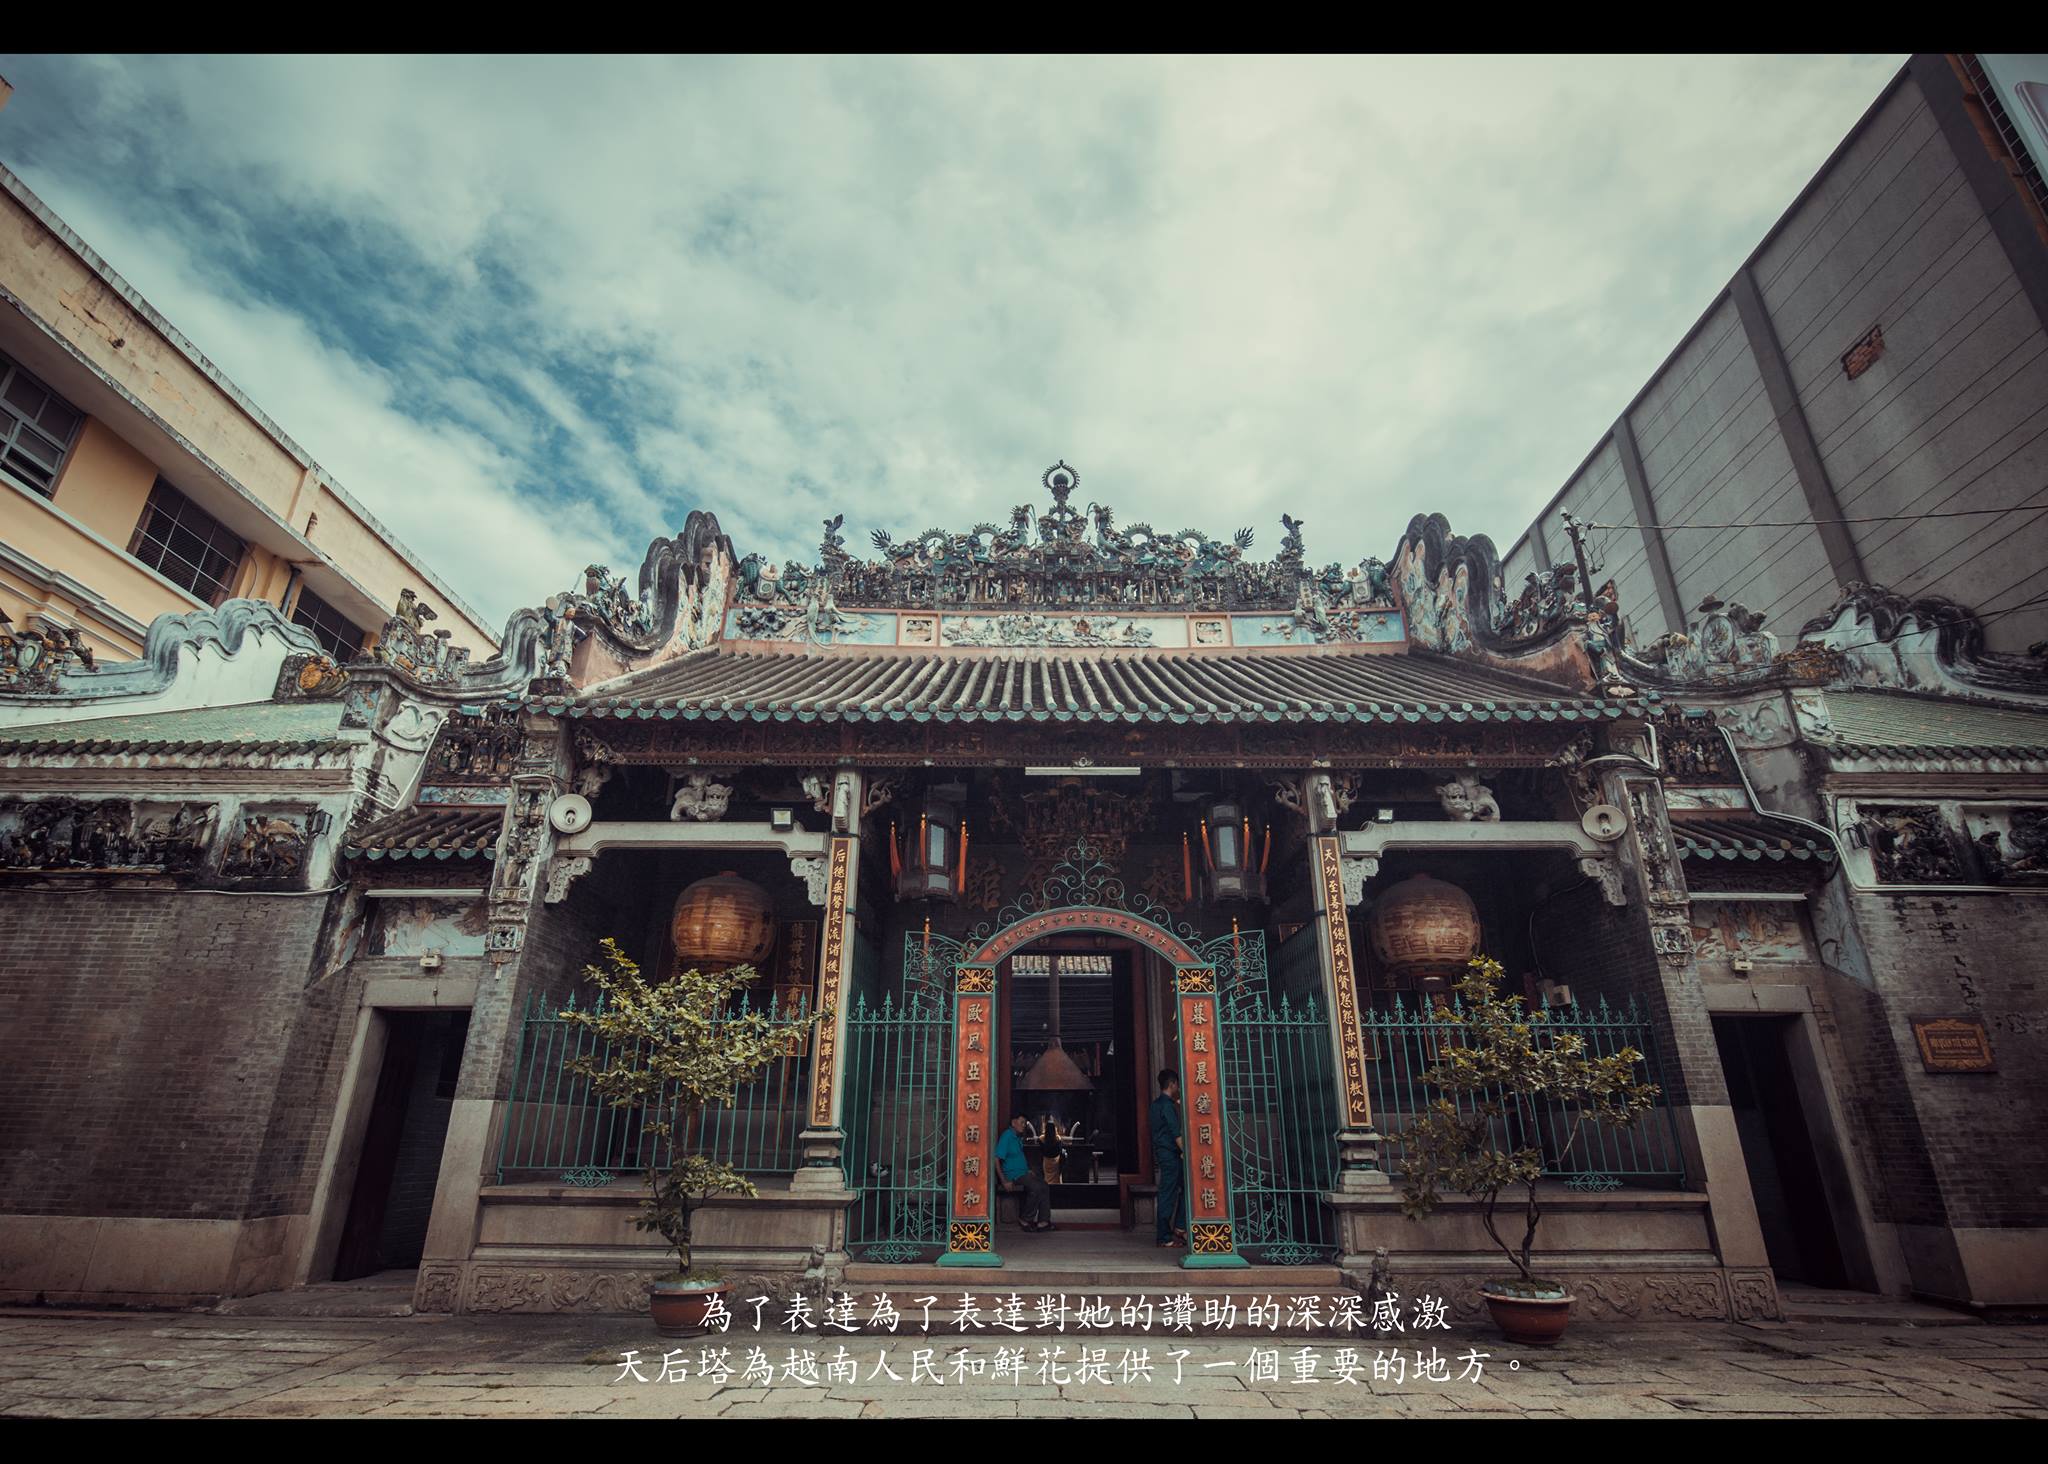 Địa danh chụp ảnh cổ trang Sài Gòn chắc chắn sẽ khiến bạn mê mẩn ngay từ cái nhìn đầu tiên. Với kiến trúc cổ kính và phong cách trang trí đậm chất cổ trang, bạn sẽ được trở về thời phong kiến và lưu lại những bức ảnh đẹp nhất của chuyến đi.